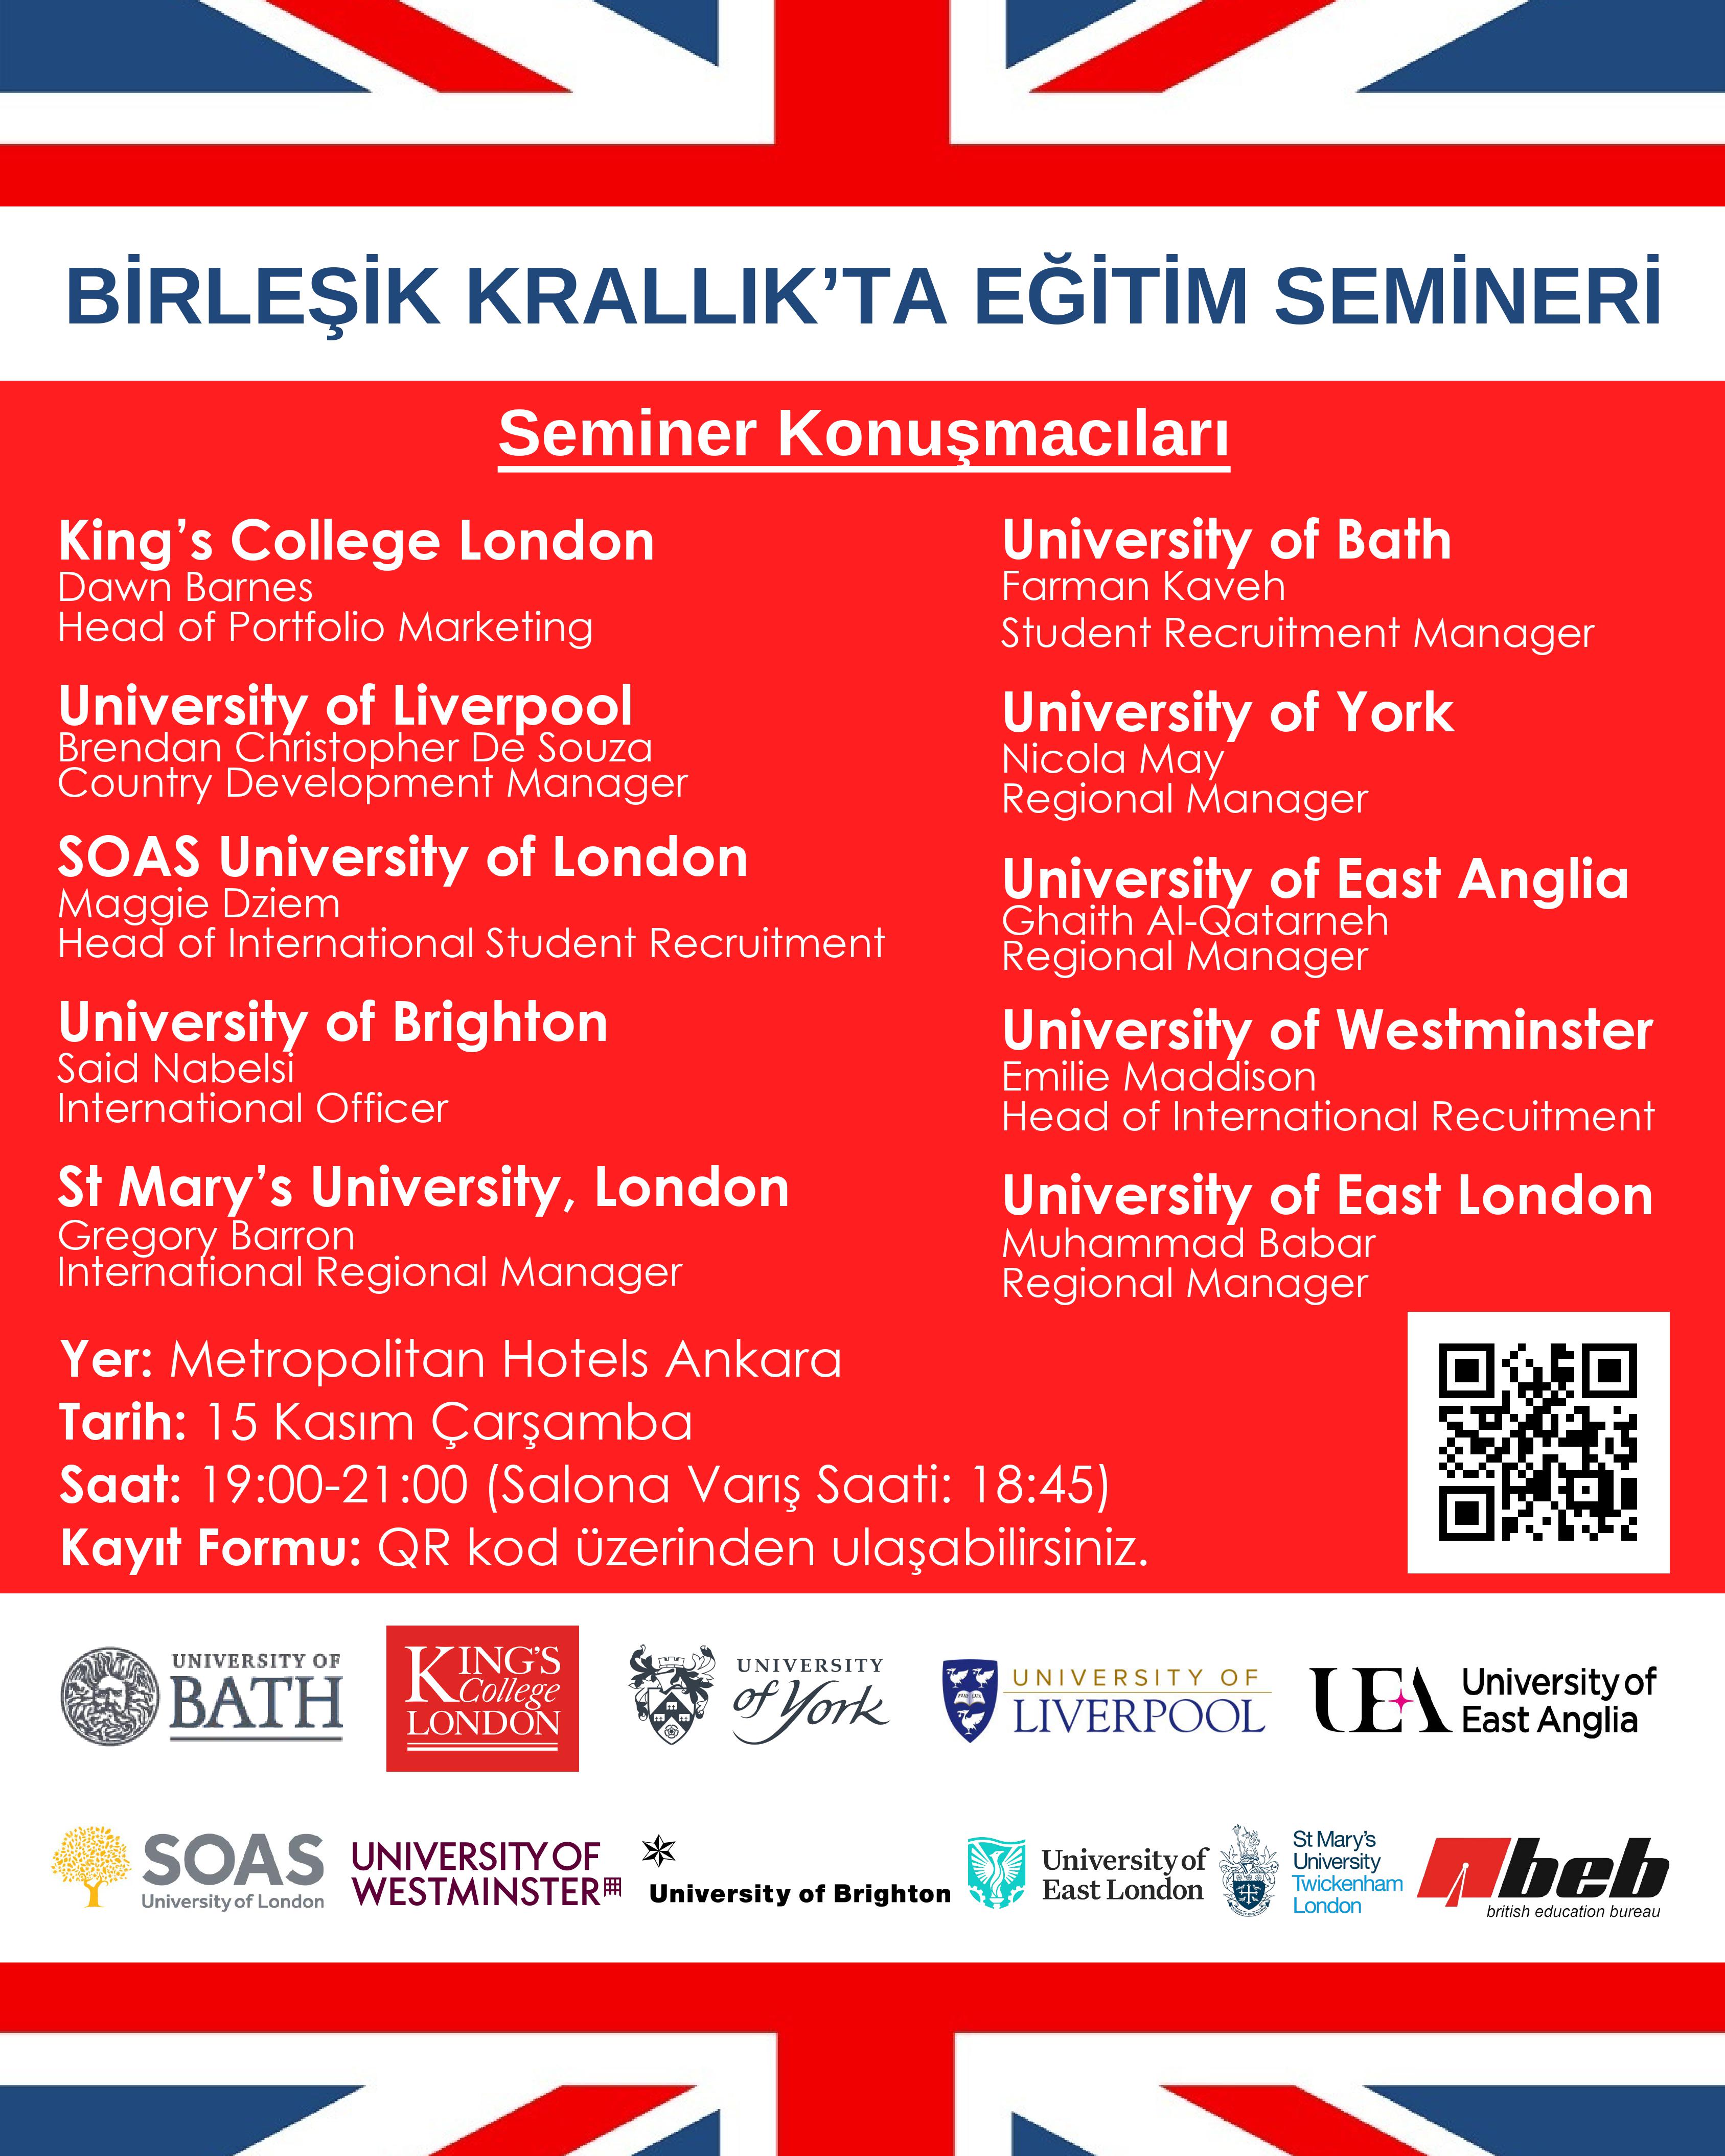 Dünyanın 10 lider Birleşik Krallık Üniversitesinin katılım göstereceği ve BEB tarafından Ankara'da düzenlenecek Birleşik Krallık'ta Eğitim Semineri'nin tanıtım afişi